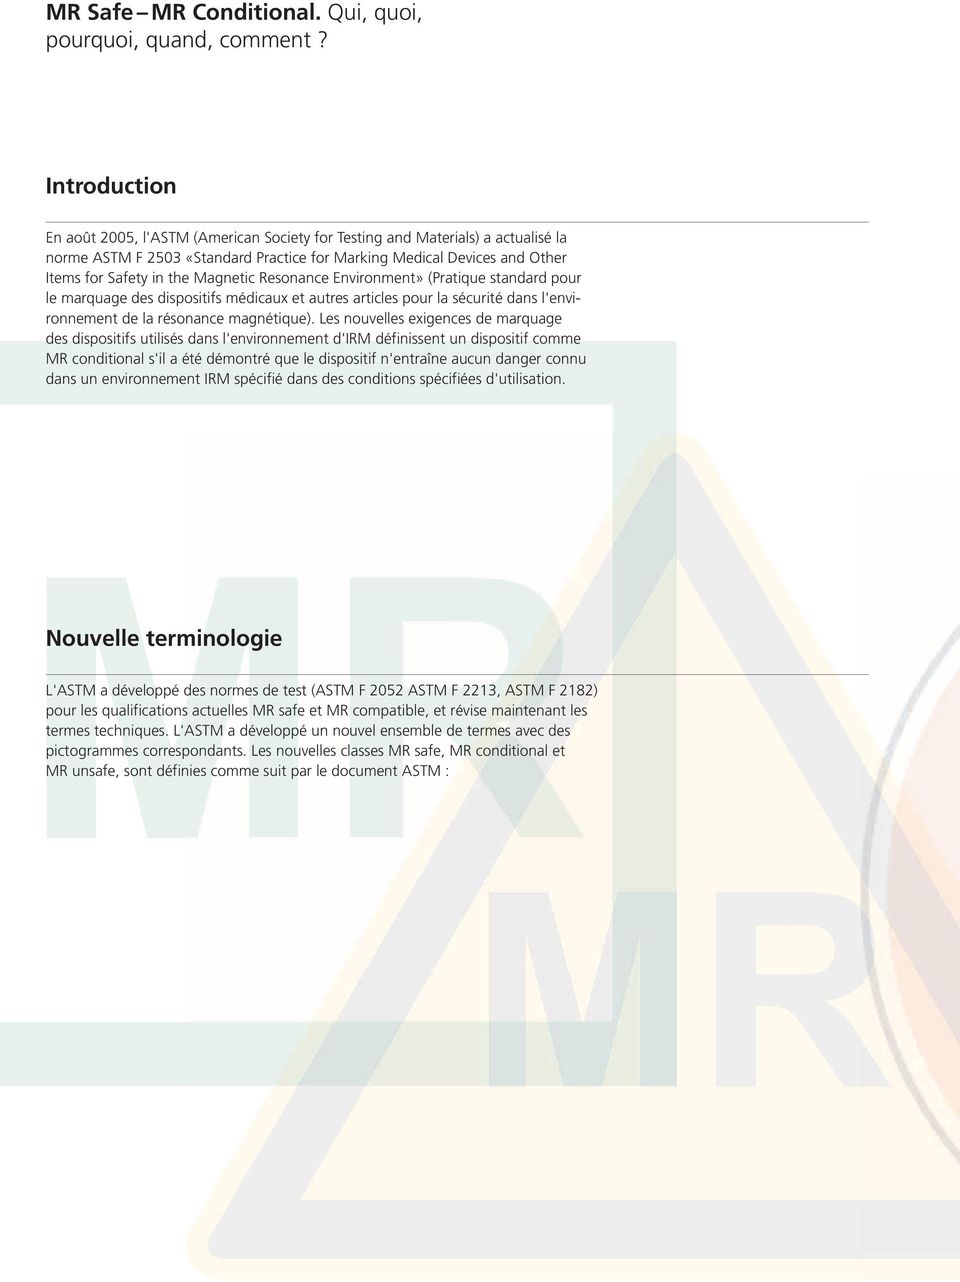 Magnetic Resonance Environment» (Pratique standard pour le marquage des dispositifs médicaux et autres articles pour la sécurité dans l'environnement de la résonance magnétique).